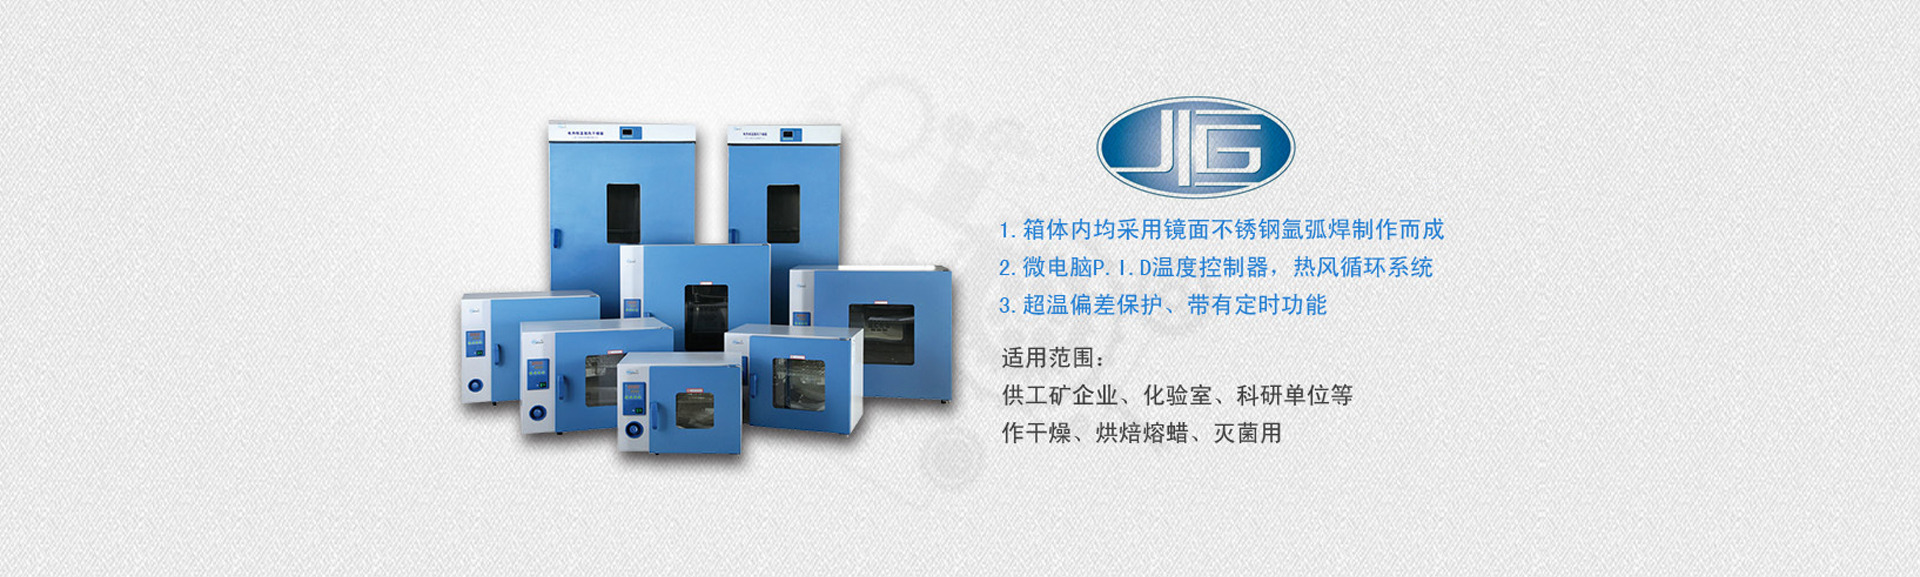 上海仪分科学仪器有限公司